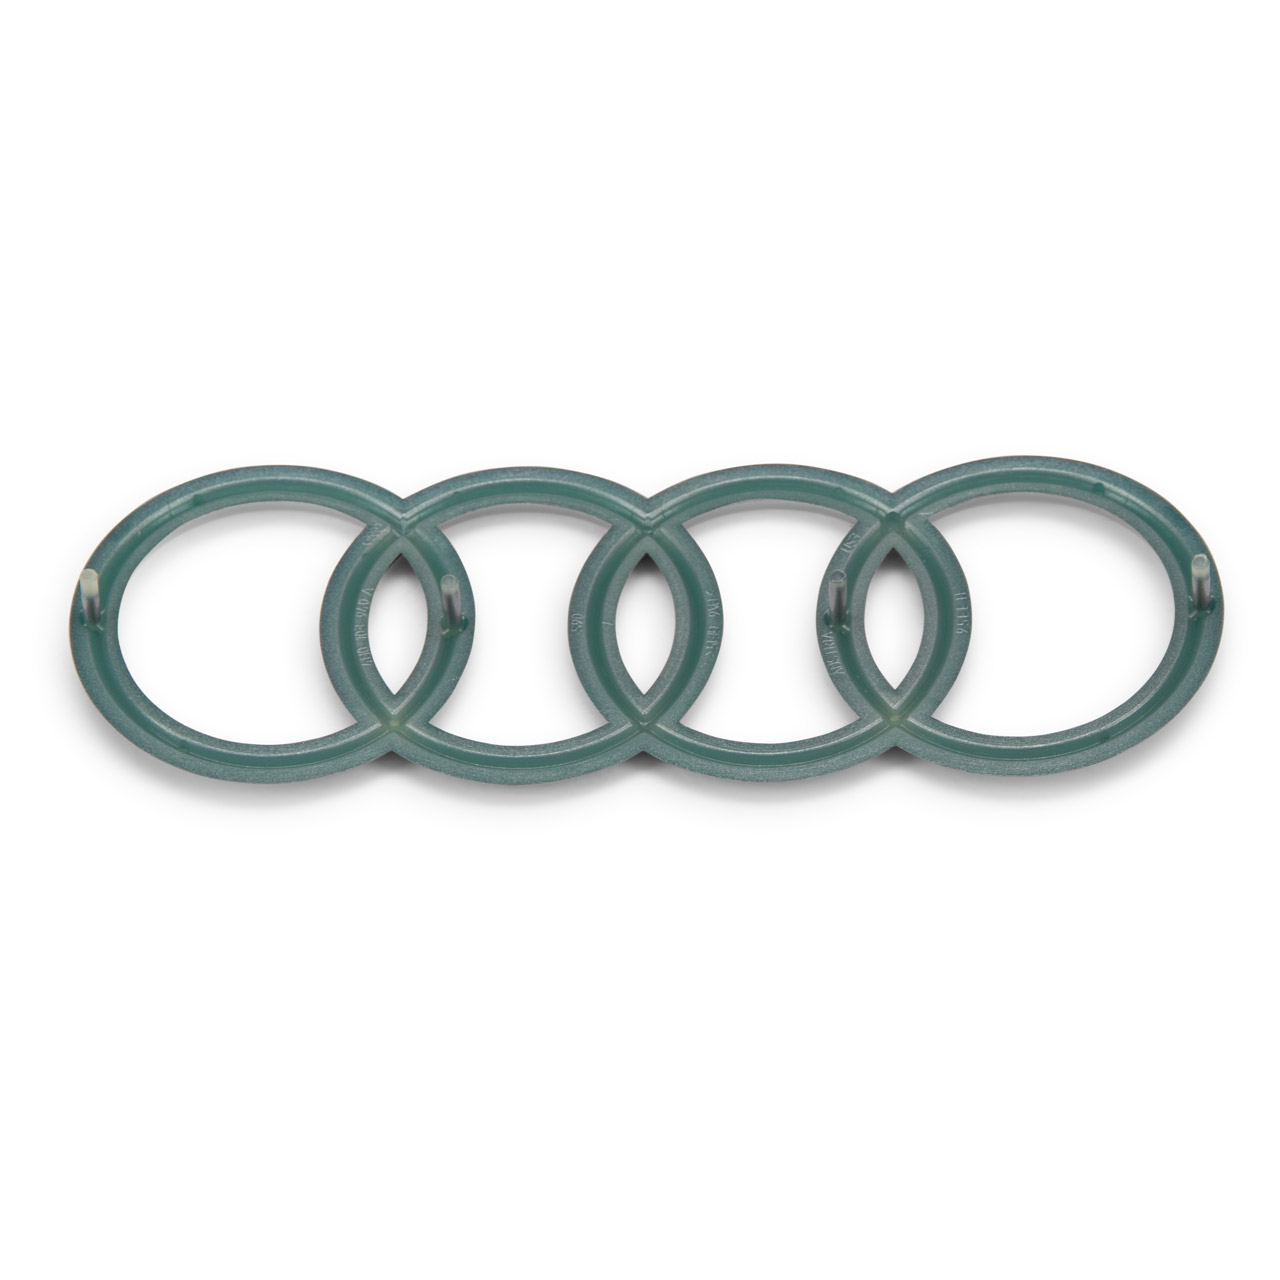 ORIGINAL Audi Emblem Ringe Logo Motorabdeckung A1 A3 A4 A5 A6 A7 A8 Q3 Q5 Q7 4H0103940A